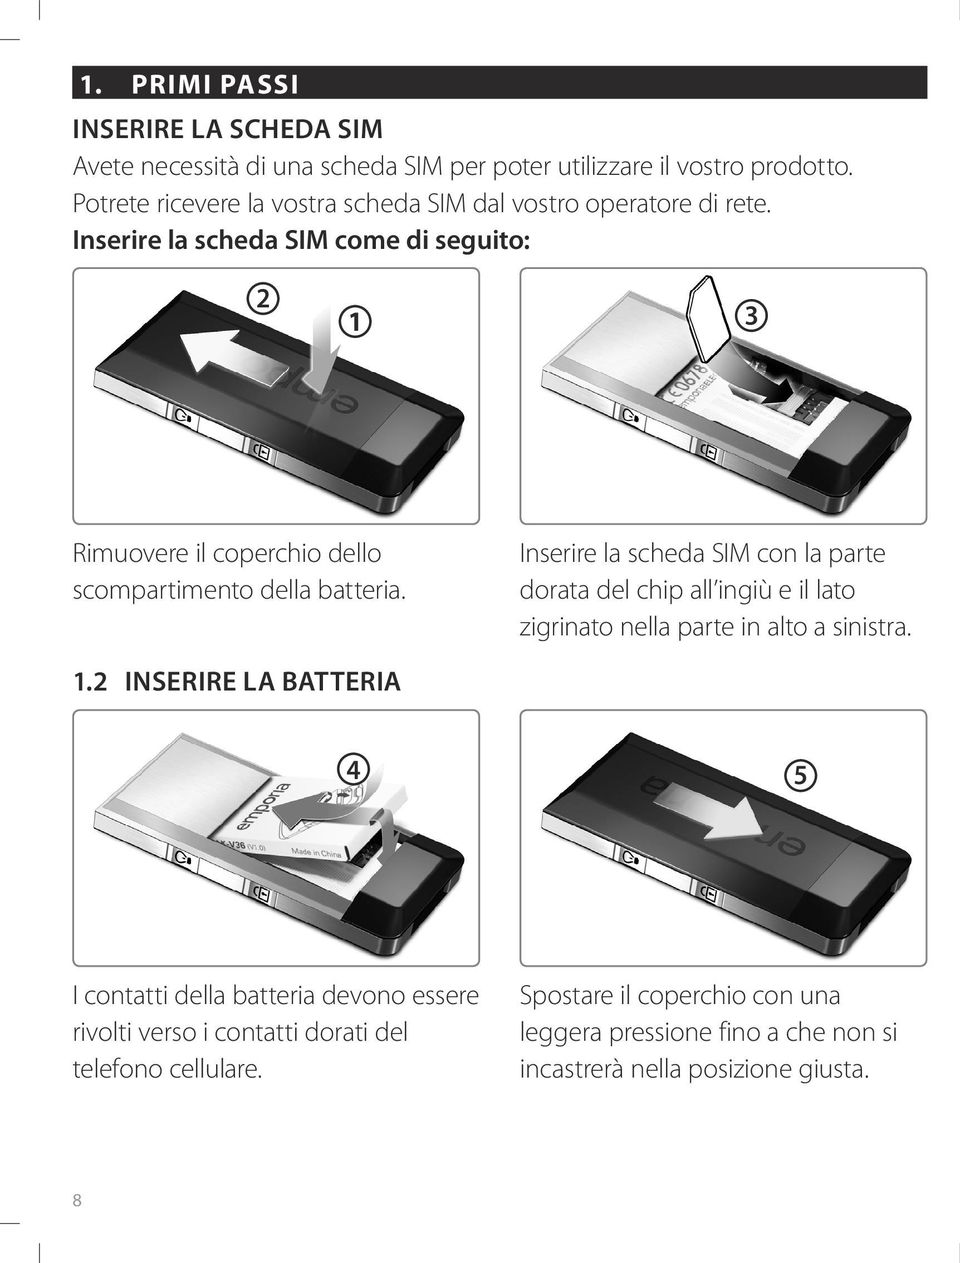 Inserire la scheda SIM come di seguito: 2 1 3 Rimuovere il coperchio dello scompartimento della batteria.